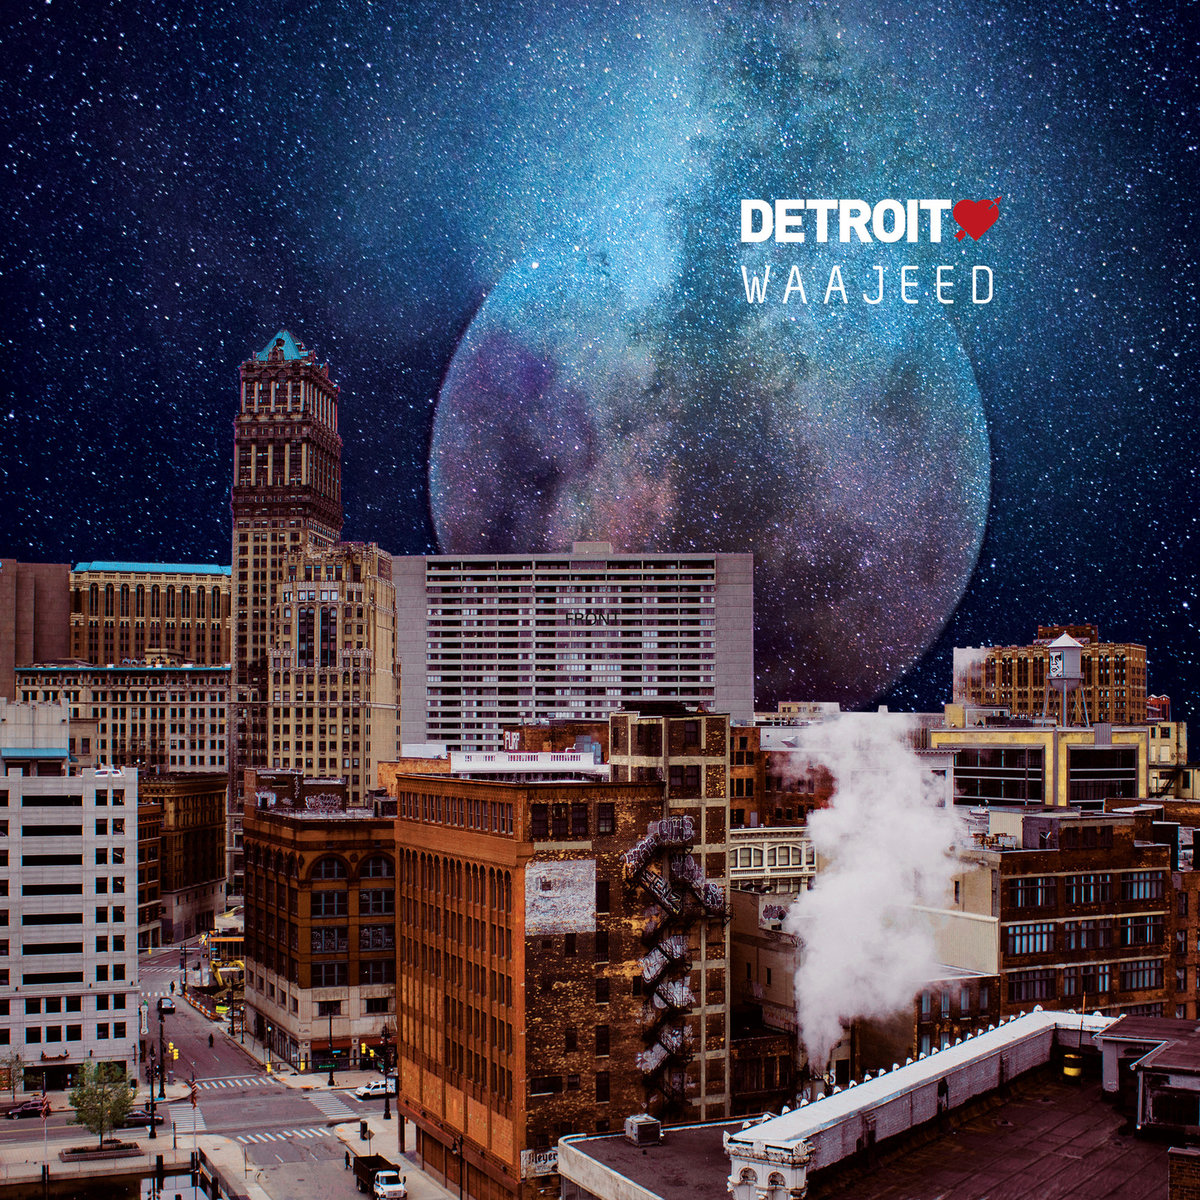 Detroit Love by Waajeed